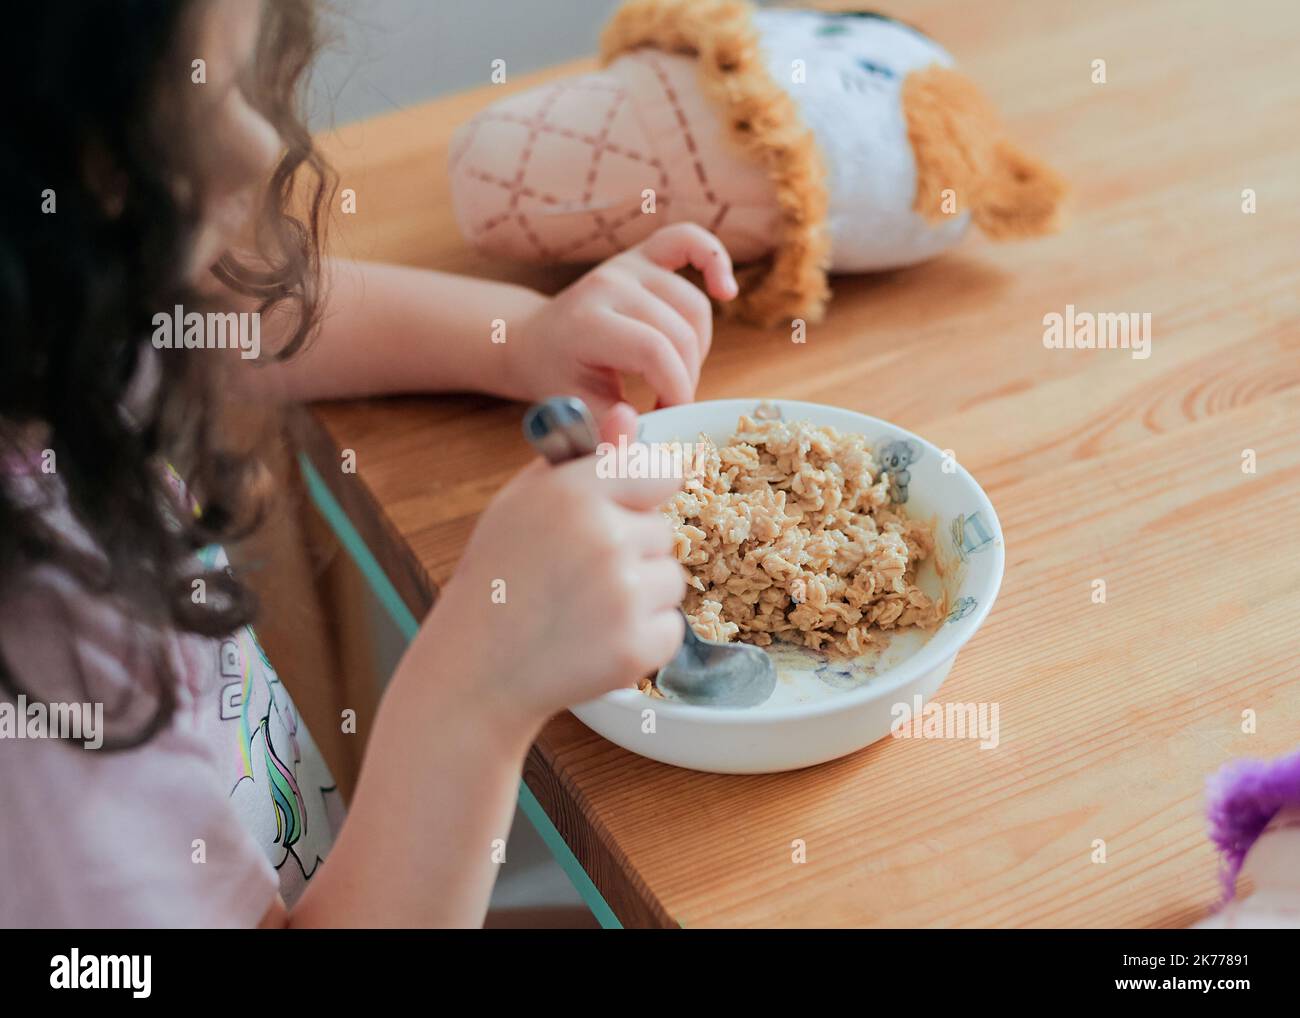 una chica toma un desayuno de avena en la mesa de la cocina rodeada de juguetes Foto de stock